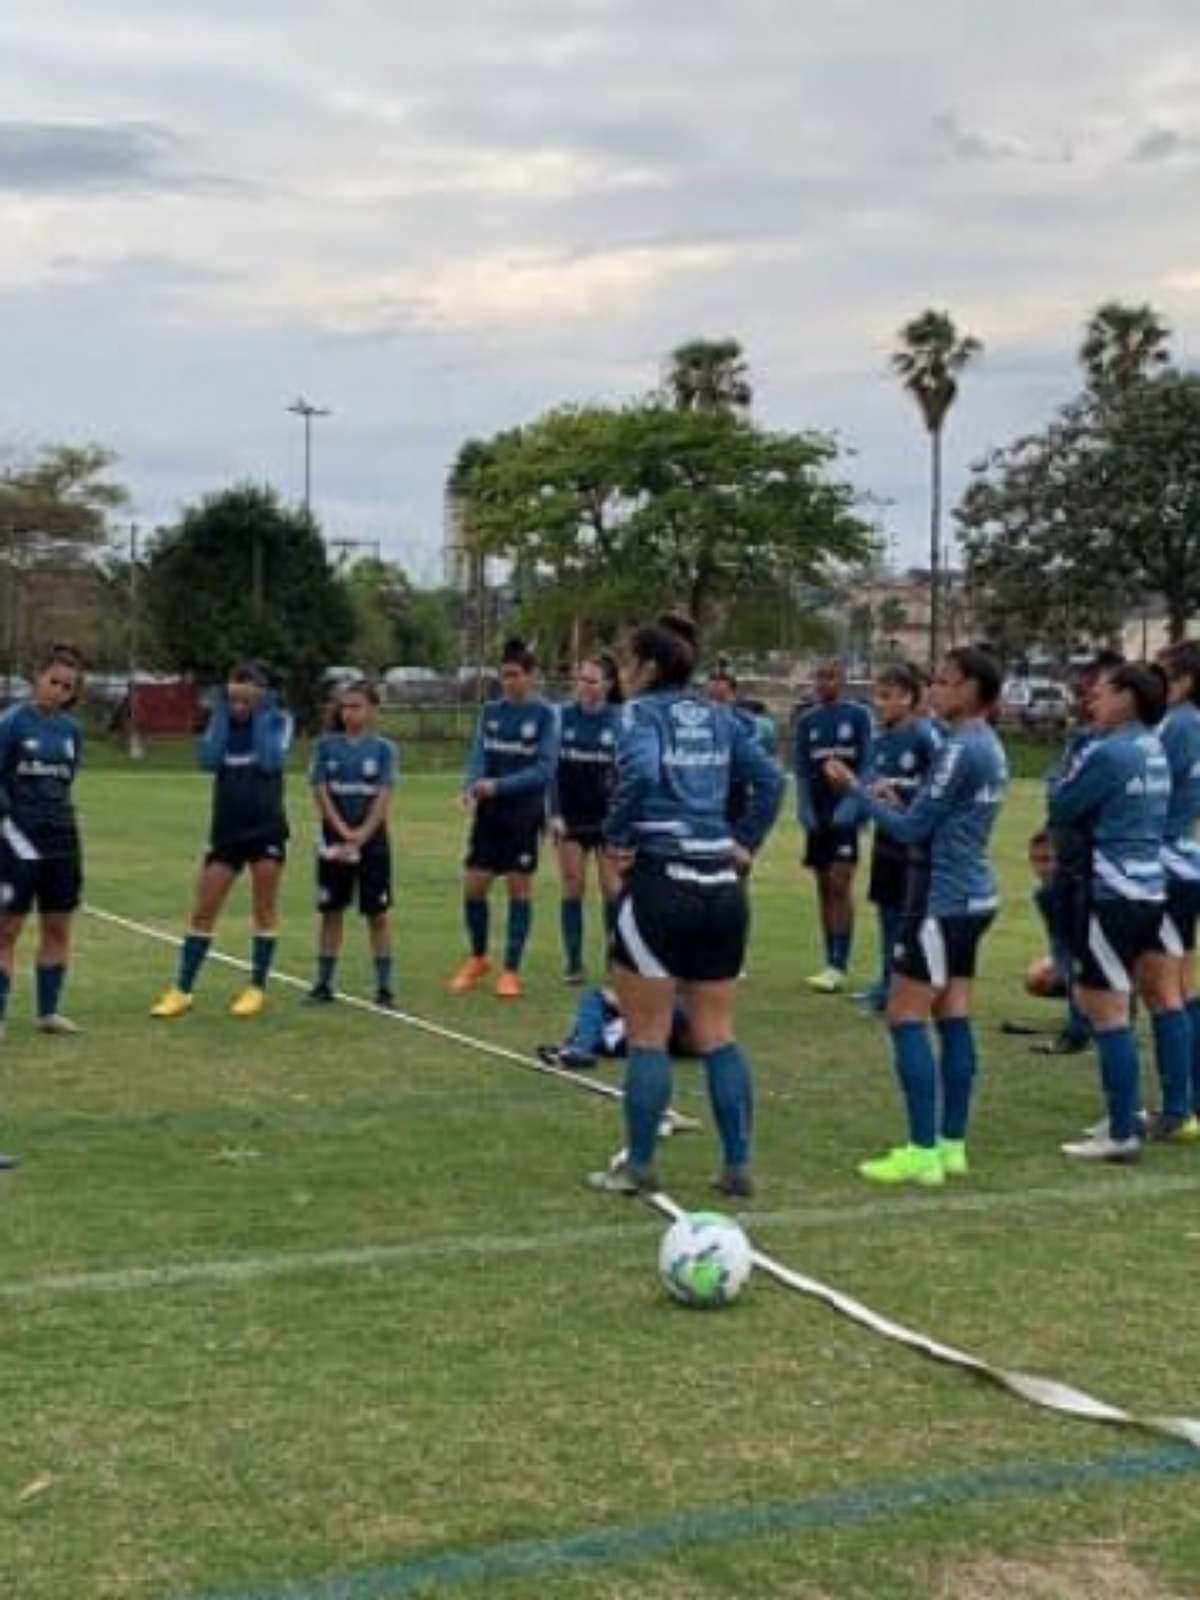 Grêmio embarca para Belo Horizonte com apenas 12 atletas para estreia no Brasileiro  Feminino